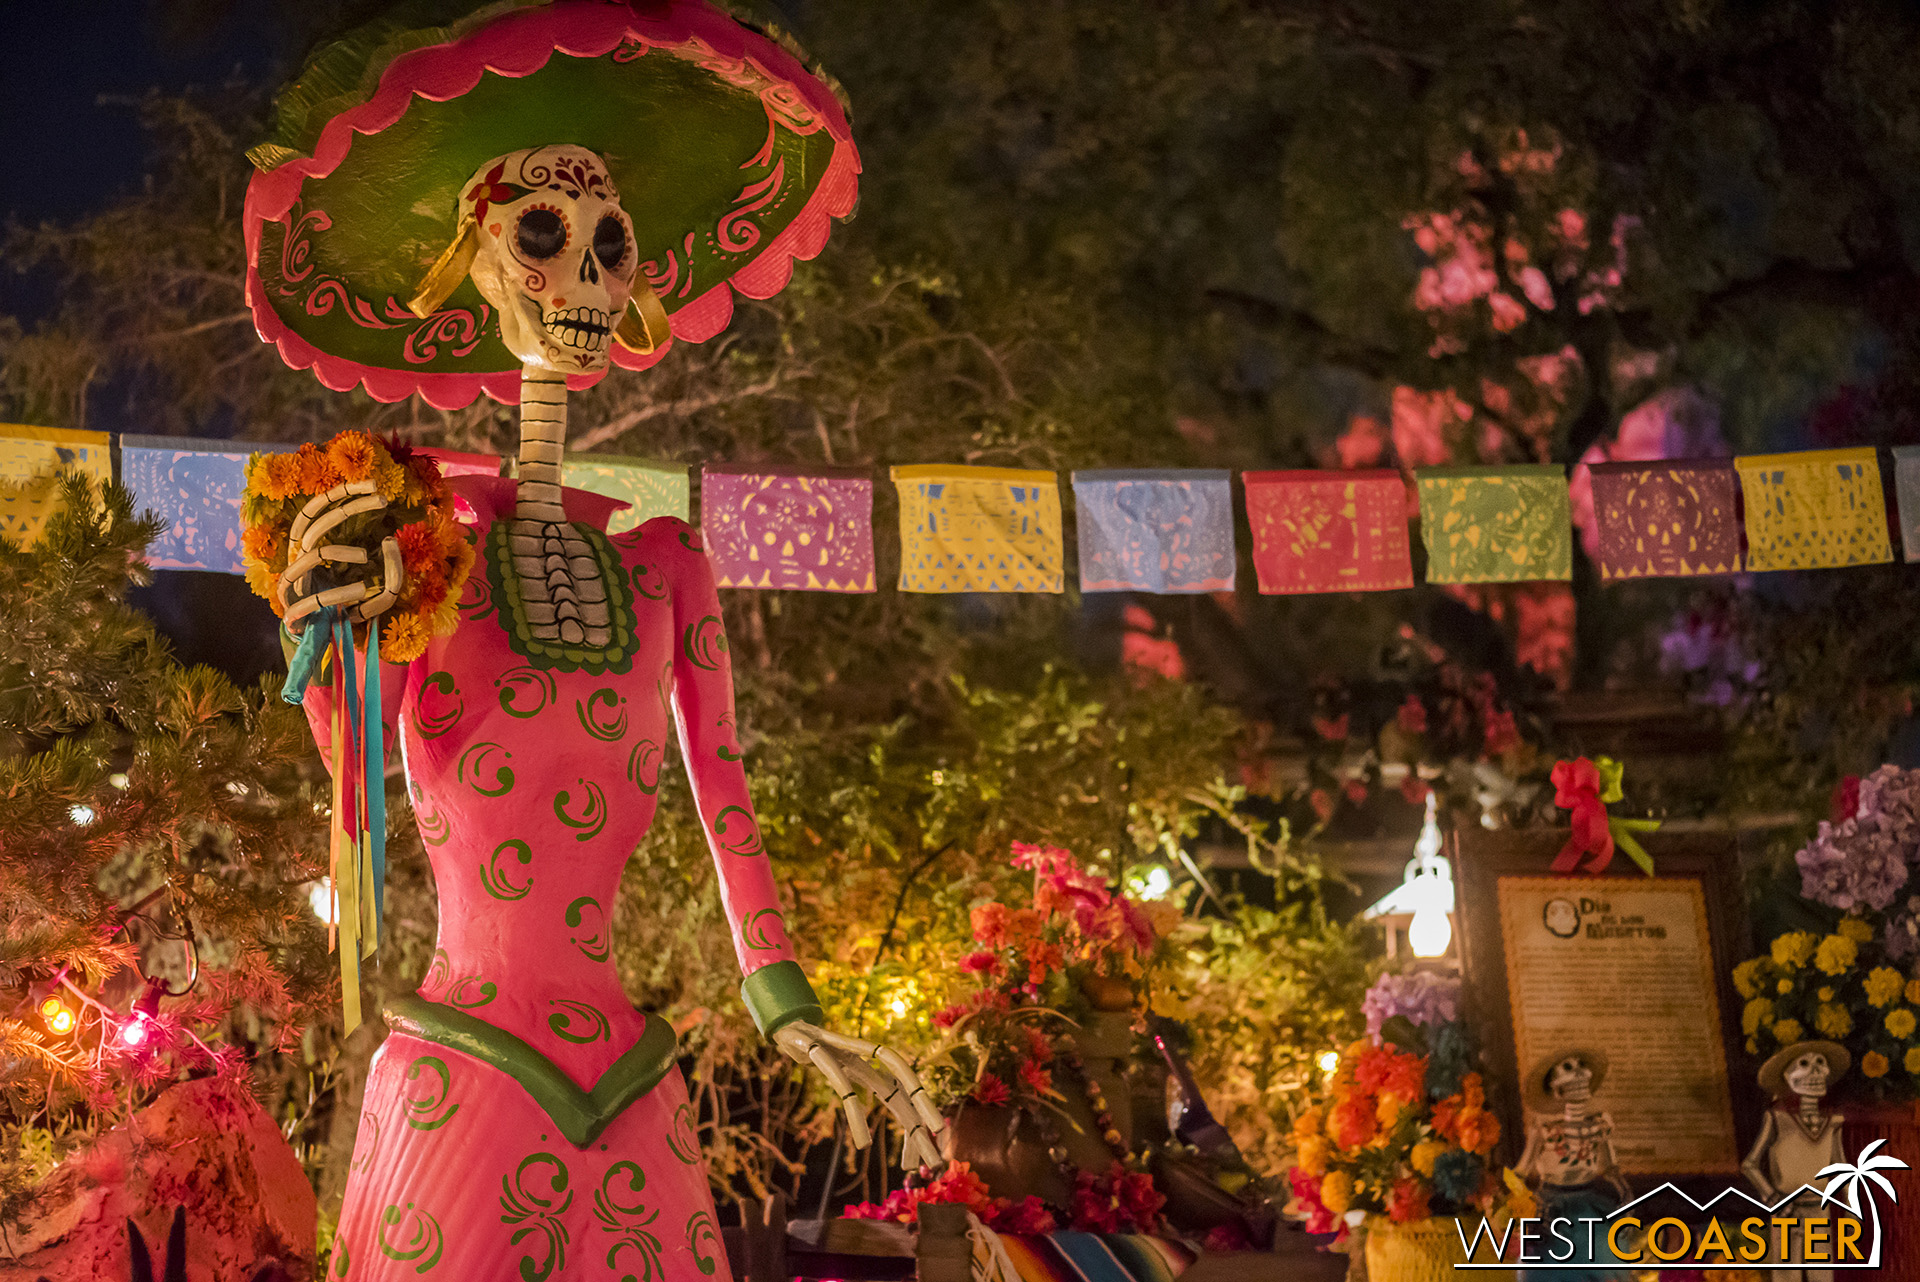  The Día de los Muertos set is back in Zocalo Park. 